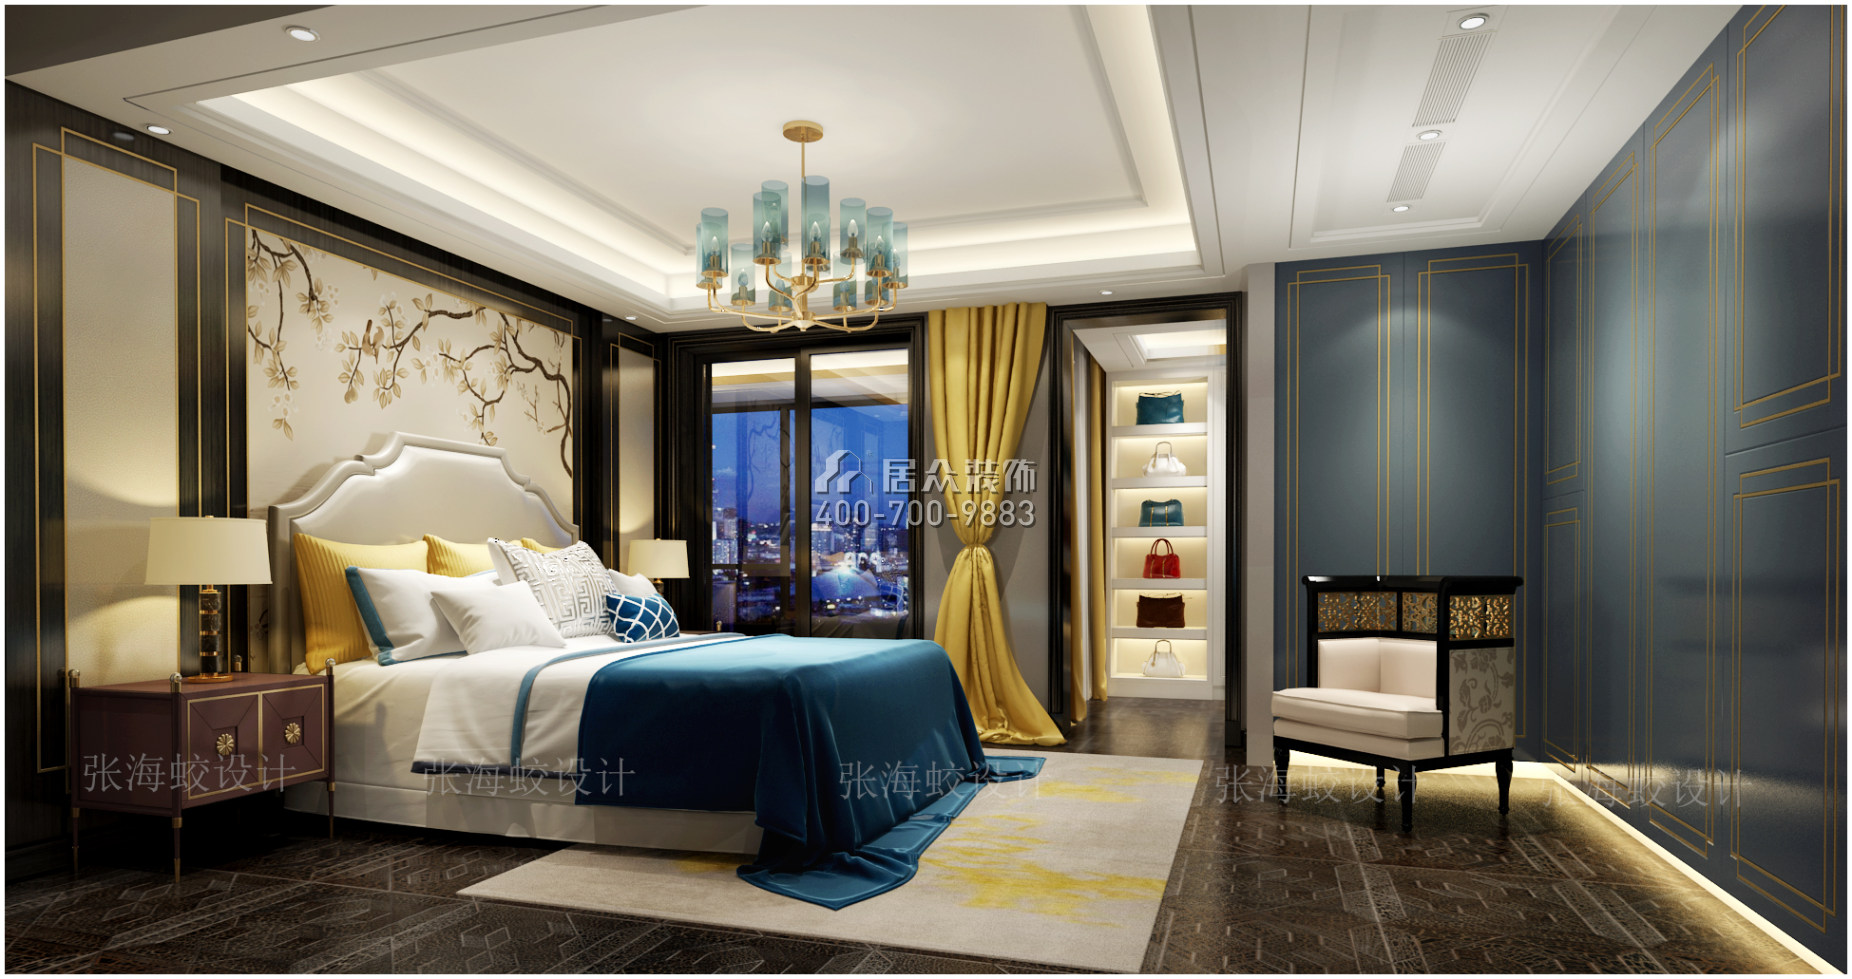 湘江一號210平方米混搭風格平層戶型臥室裝修效果圖